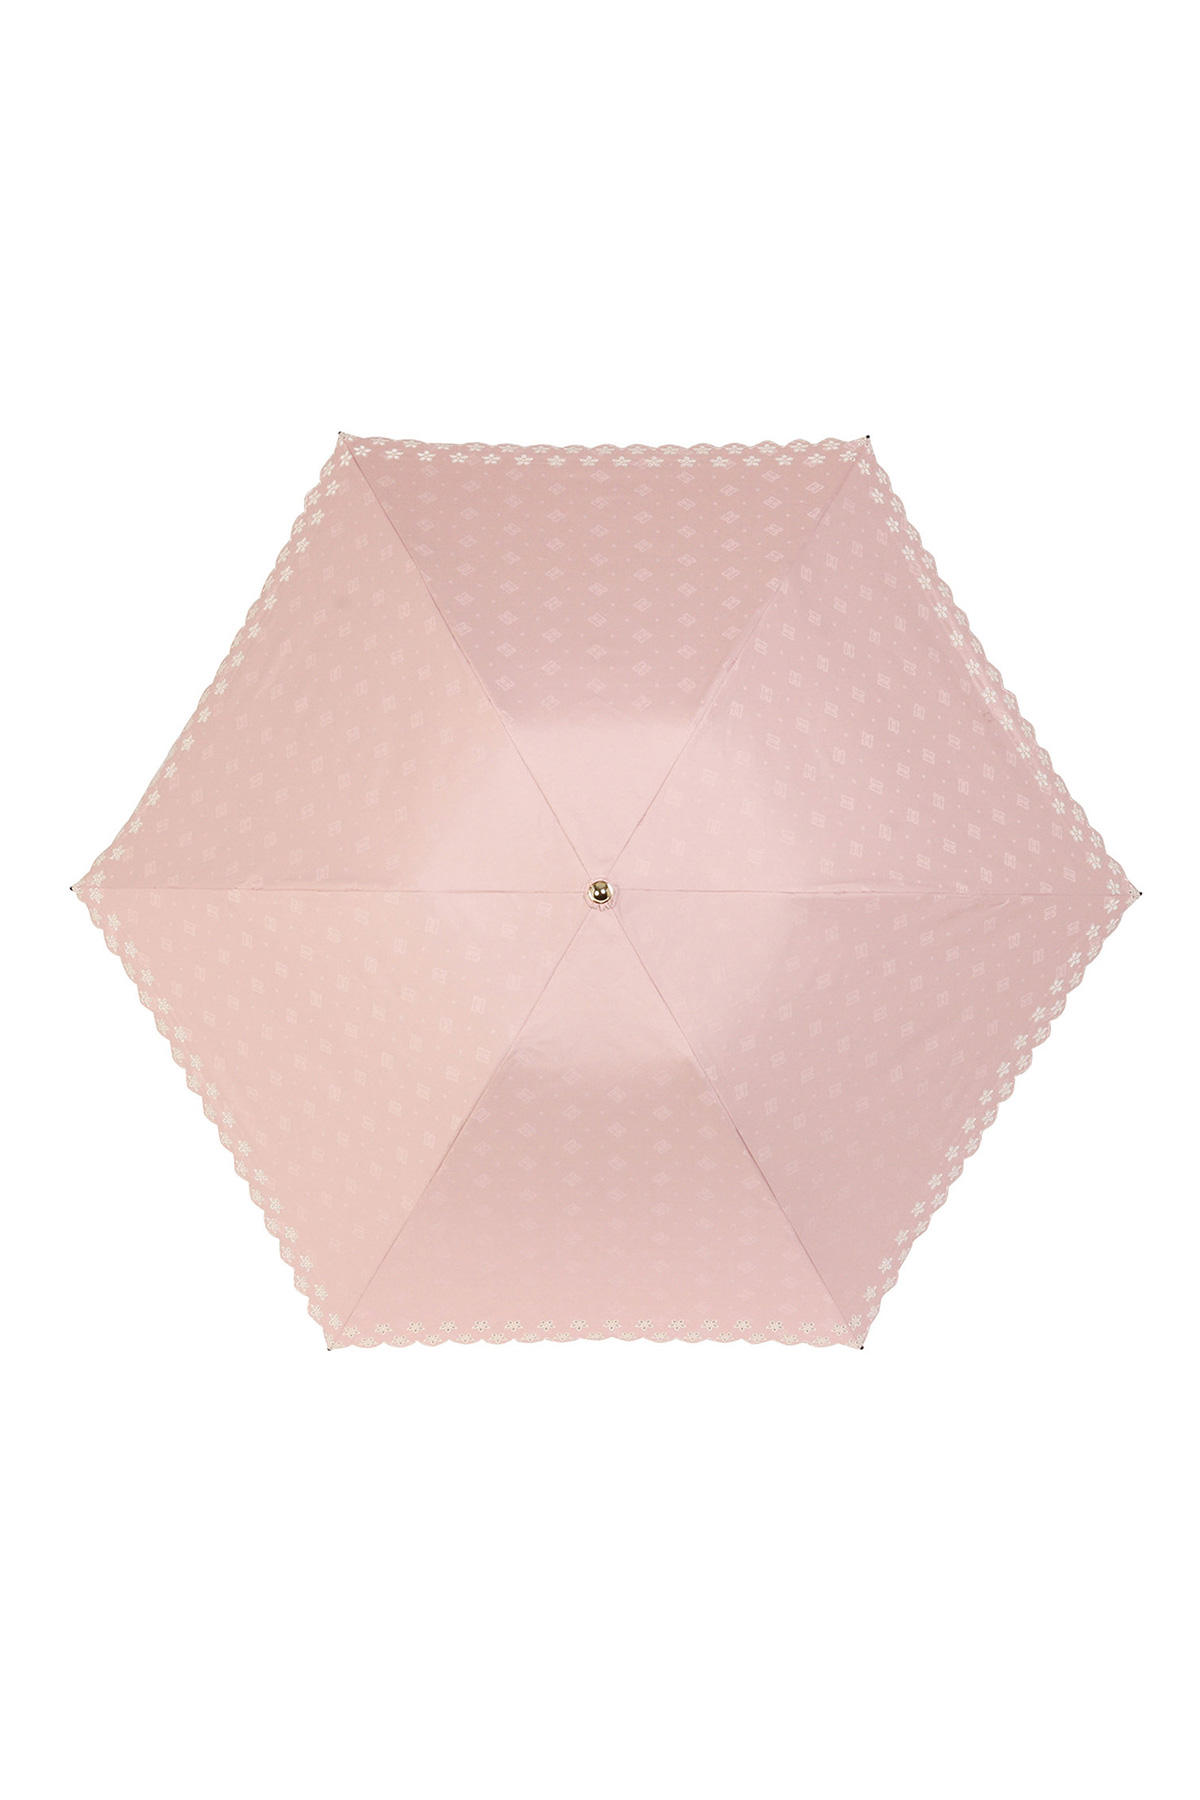 【日傘】ミニ折りたたみ傘ジャカード刺繍 詳細画像 3